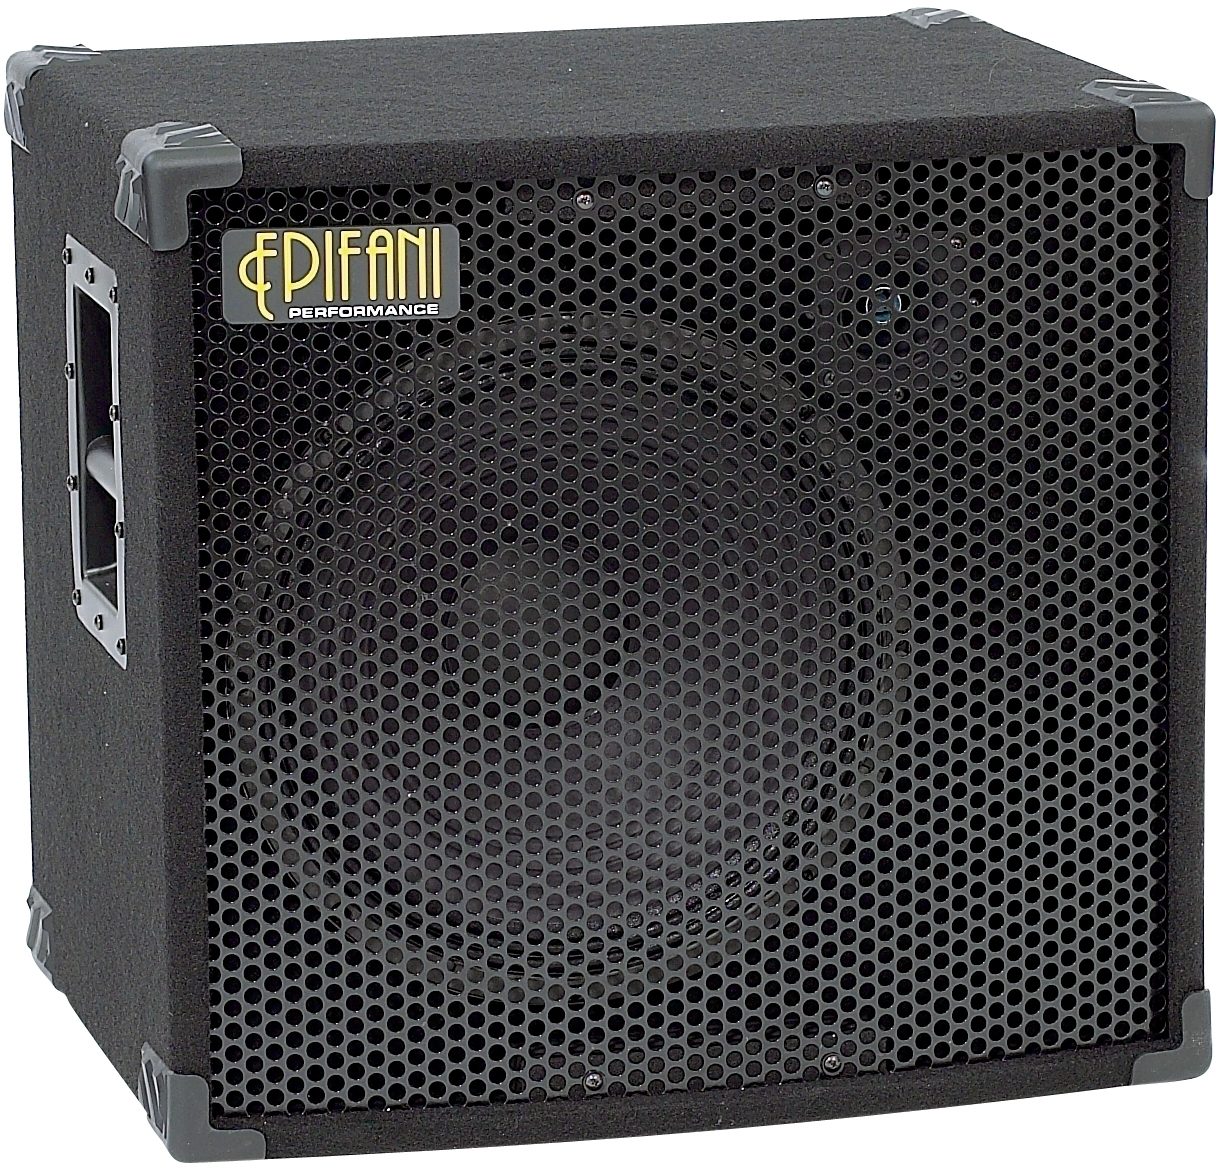 Epifani PS115 Bass Cabinet | zZounds